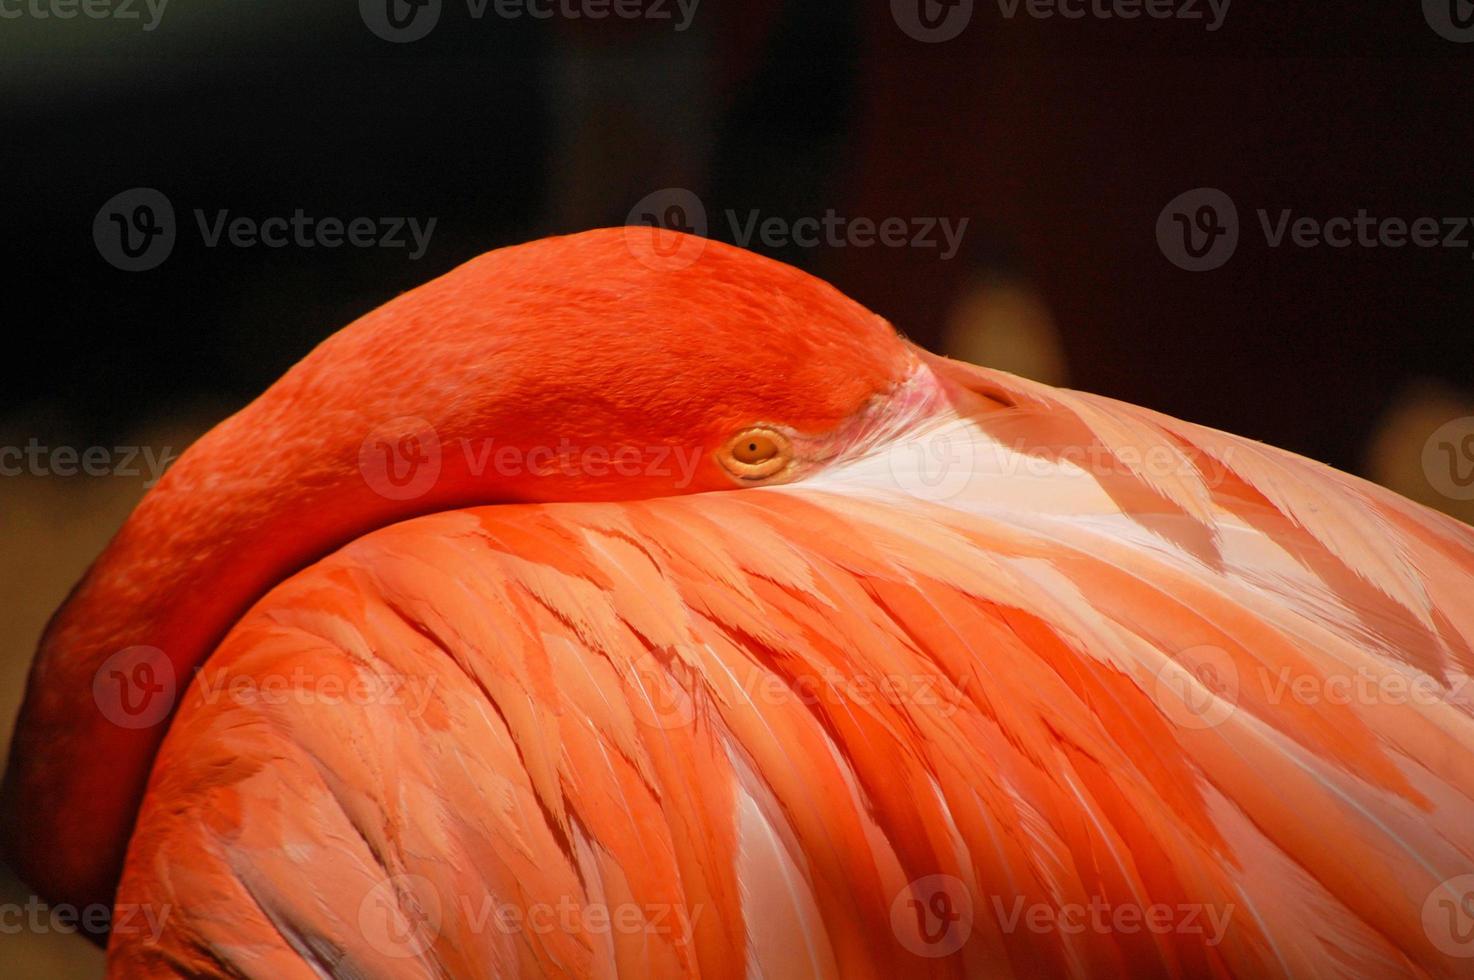 amerikanischer Flamingo hautnah foto